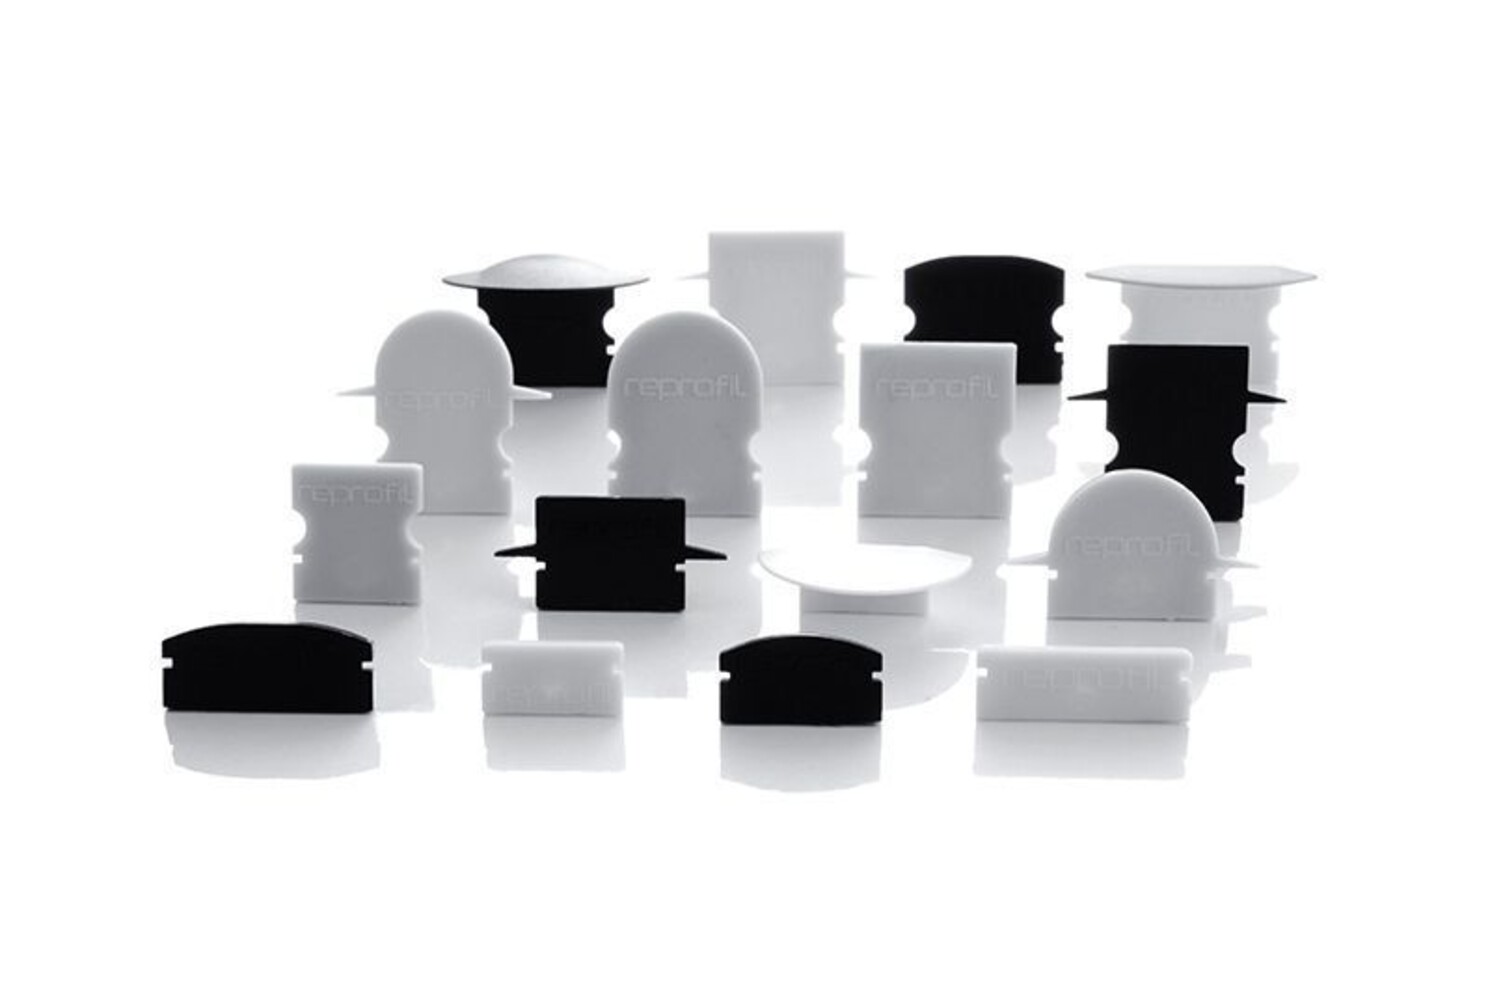 Stilvolle Set von schlanken Endkappen der Marke Deko-Light mit Breite von 6mm und Höhe von 12mm